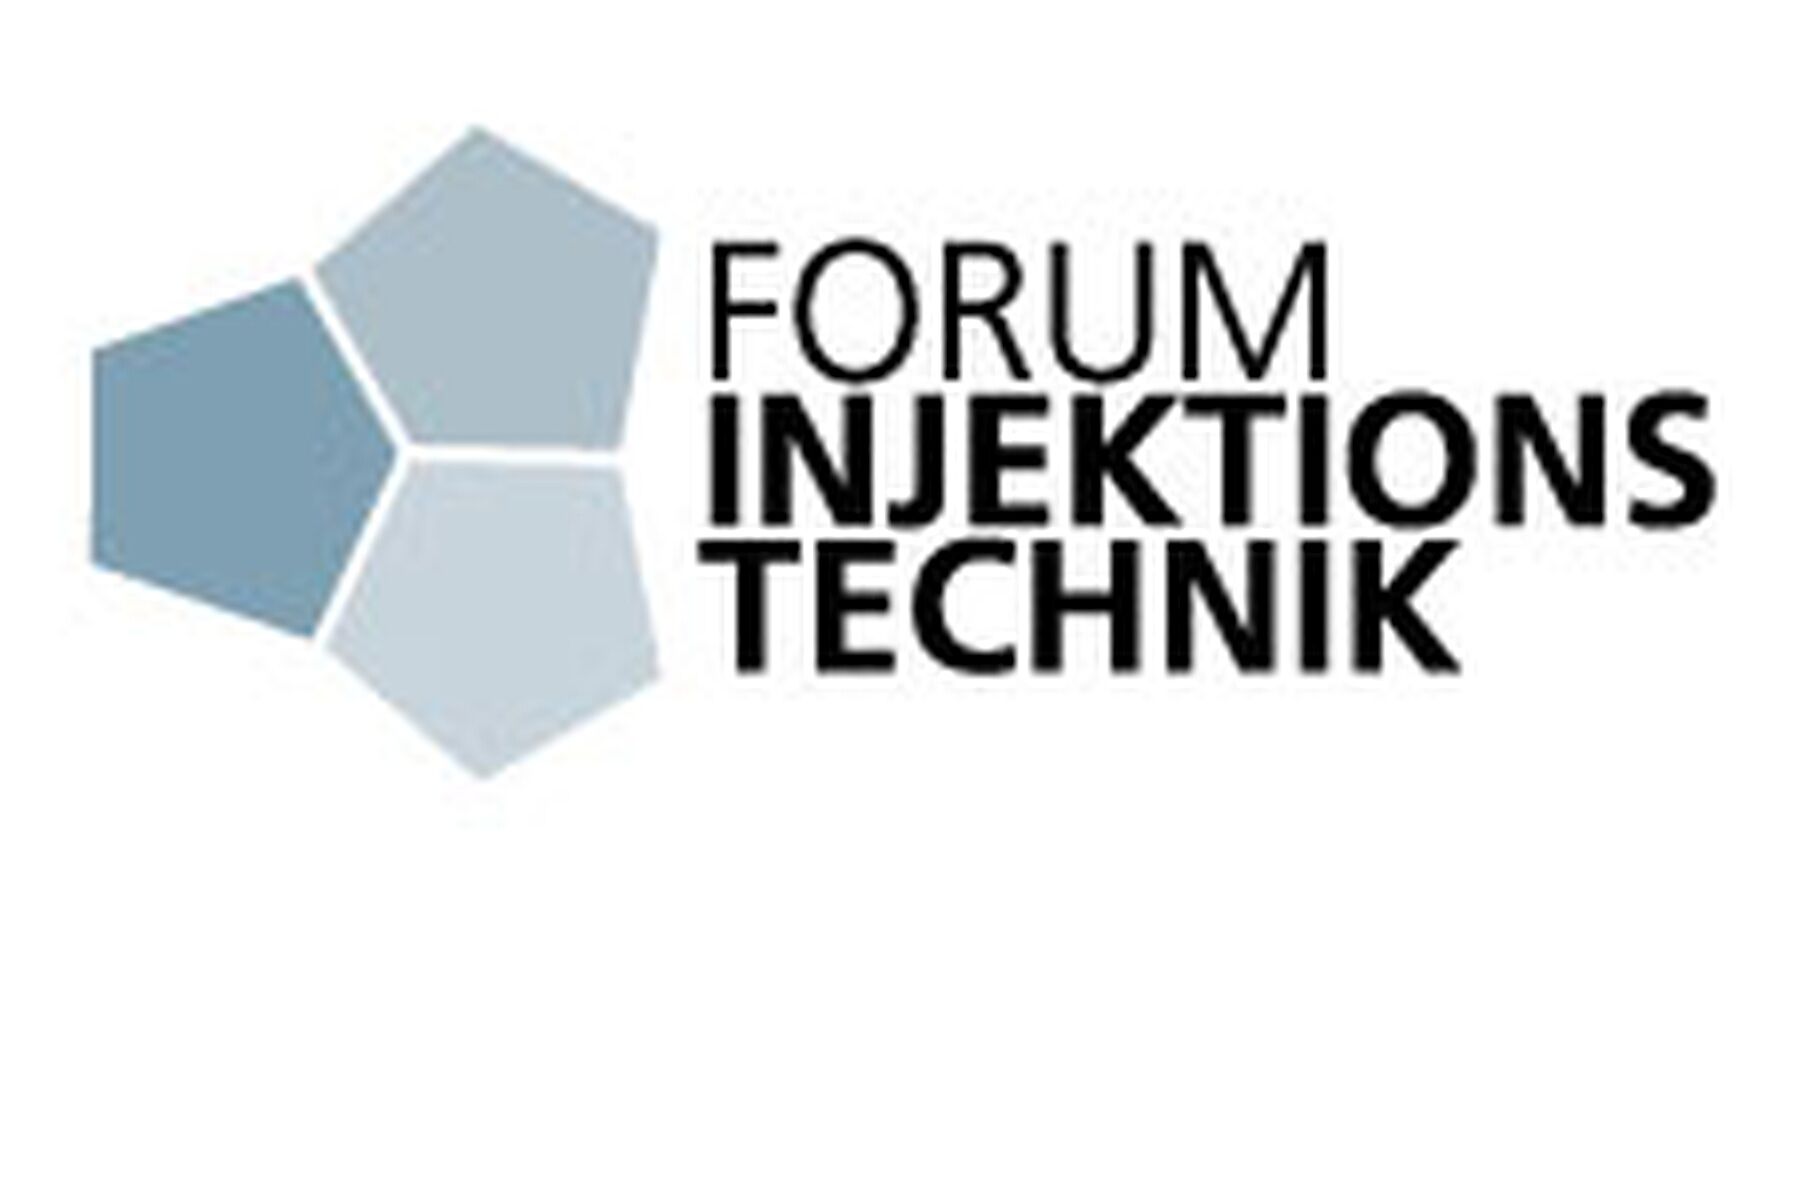 Forum Injections technique